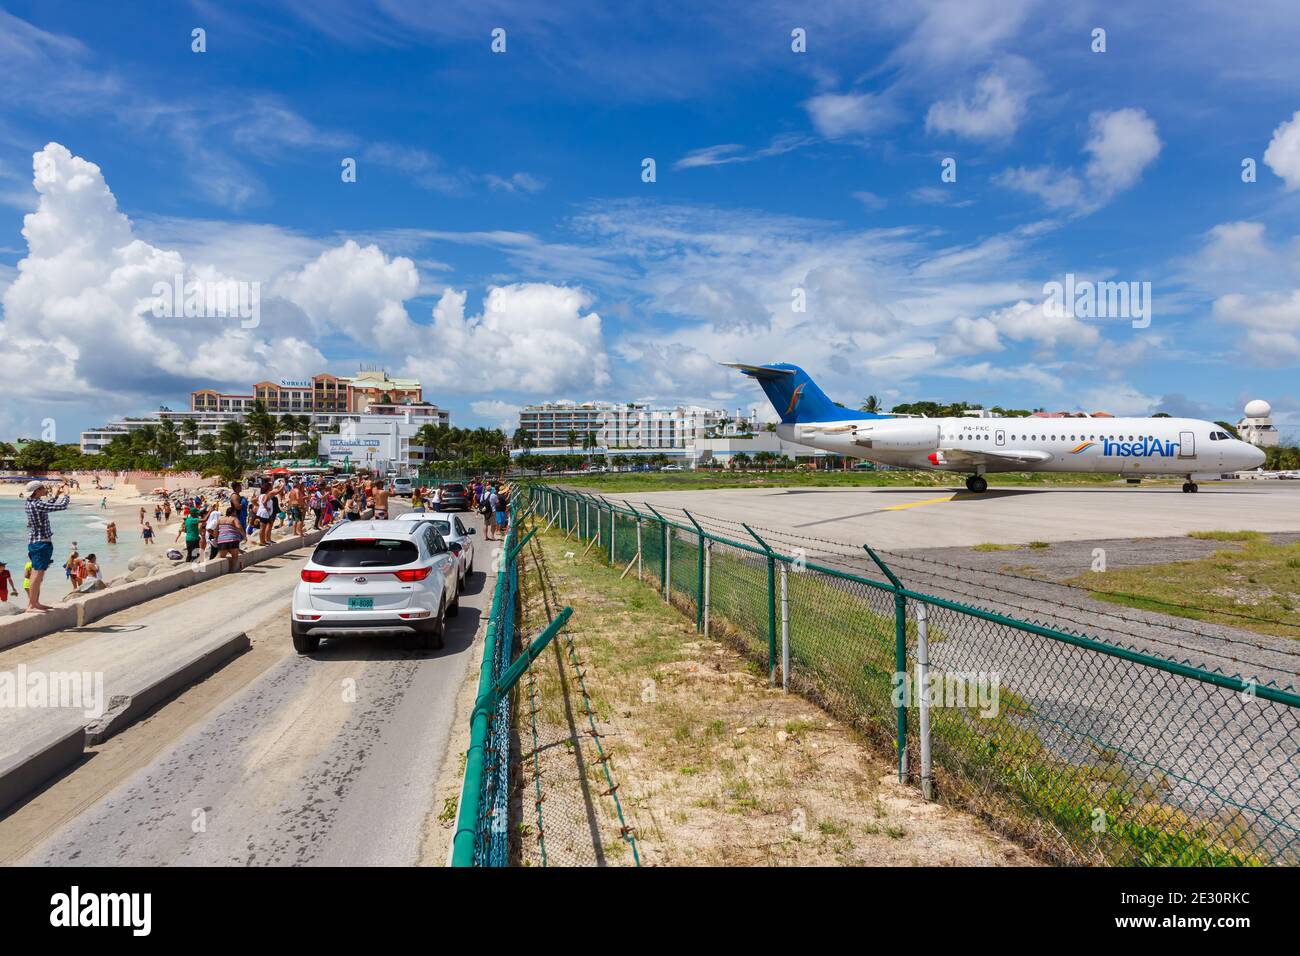 Sint Maarten, Netherlands Antilles - September 17, 2016: Insel Air Fokker 70 airplane at Sint Maarten Airport (SXM) in the Caribbean. Stock Photo